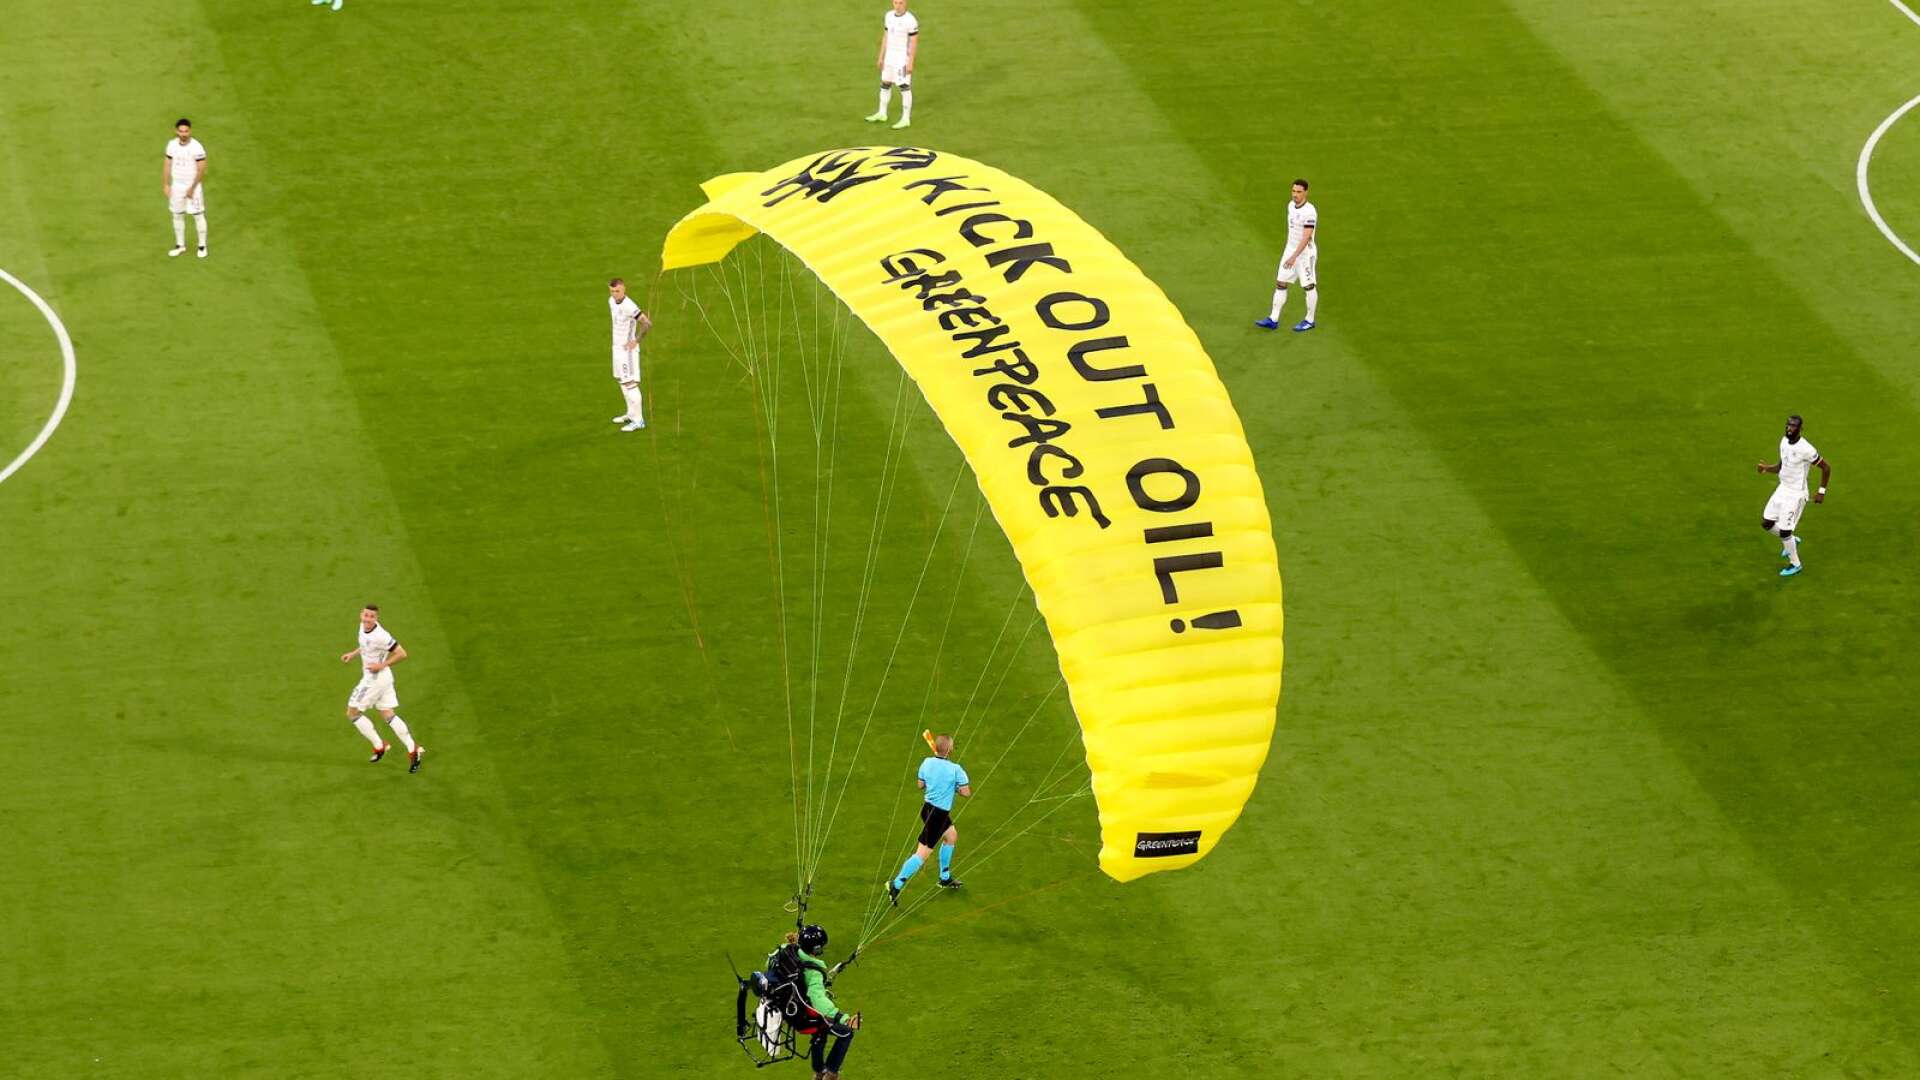 En aktivist från Greenpeace kraschlandade med fallskärm under EM-matchen i fotboll mellan Tyskland och Frankrike.